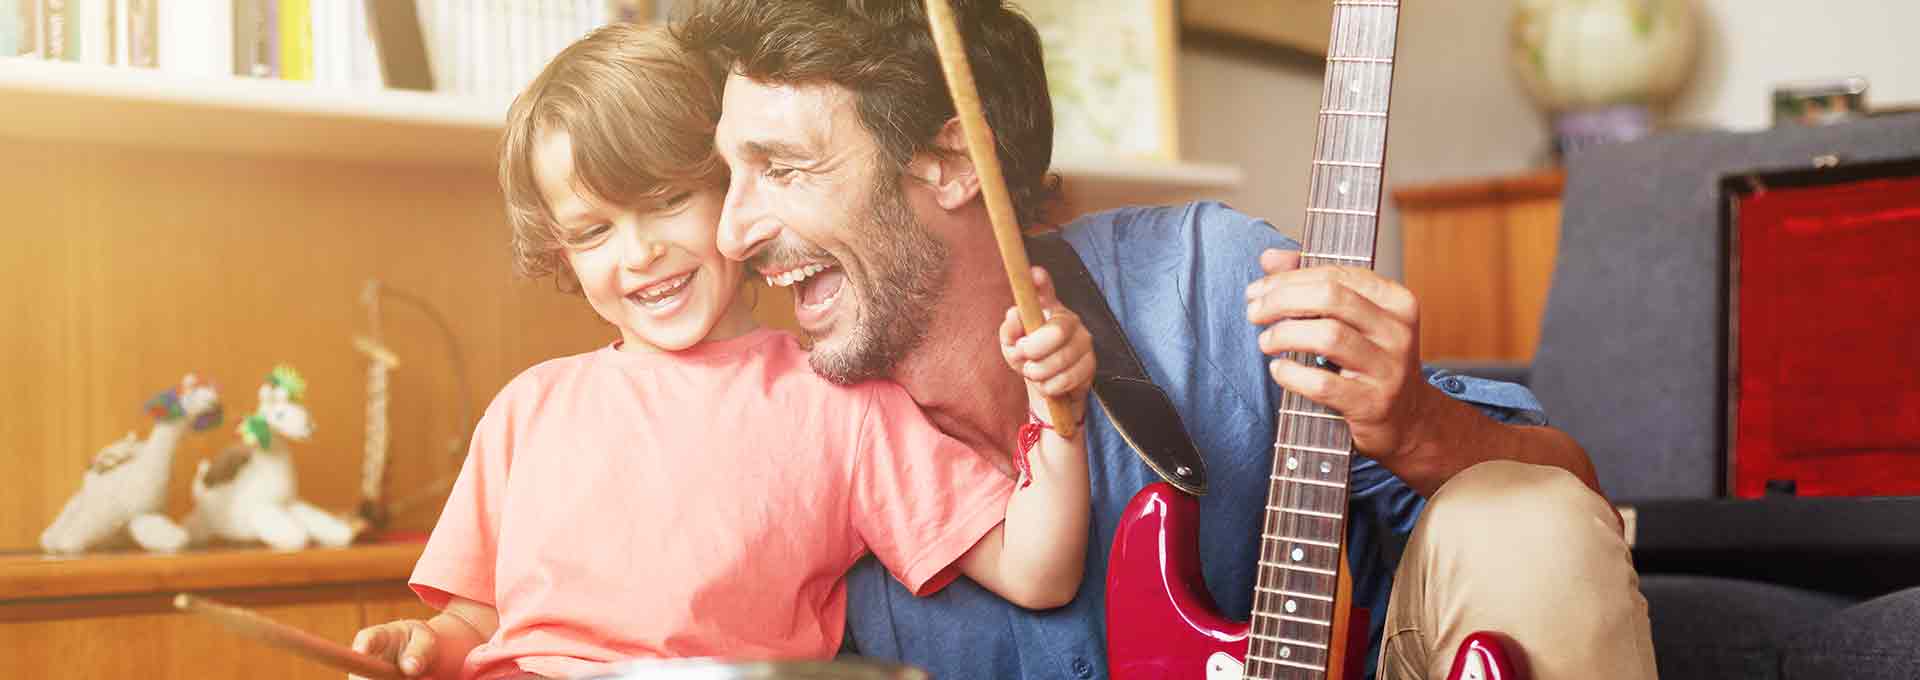 Pappa med Bernafon Viron hörapparater spelar gitarr med sin femåriga son som spelar trummor och njuter av stunden.